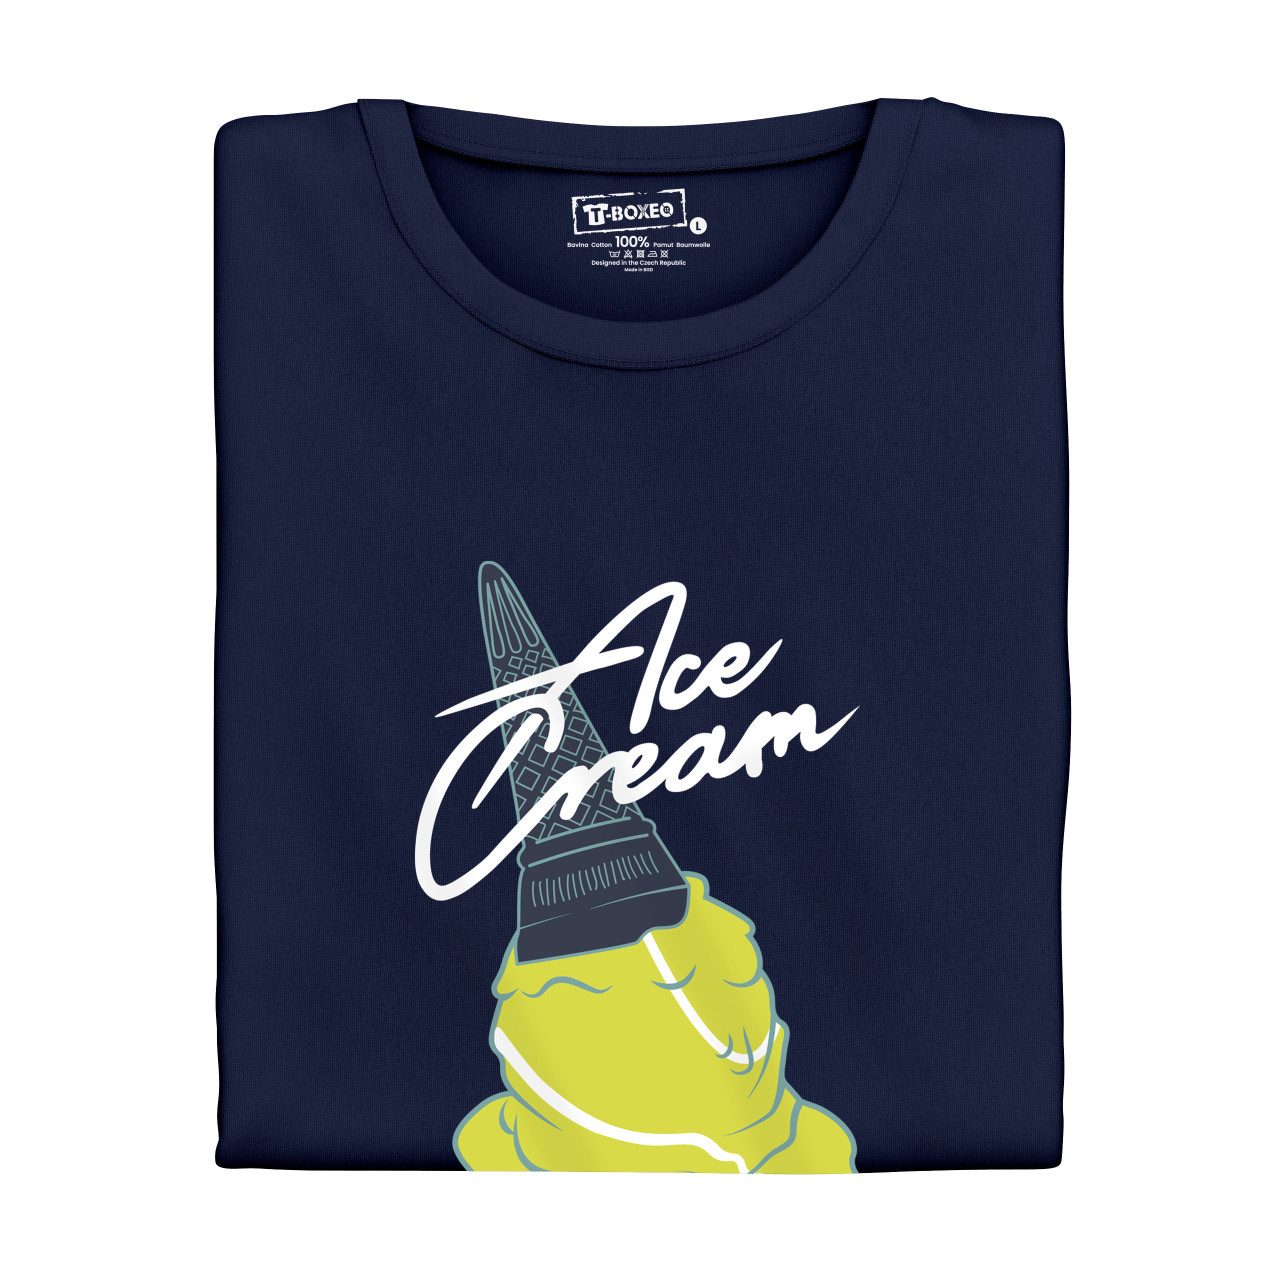 Dámské tričko s potiskem "Ace Cream"